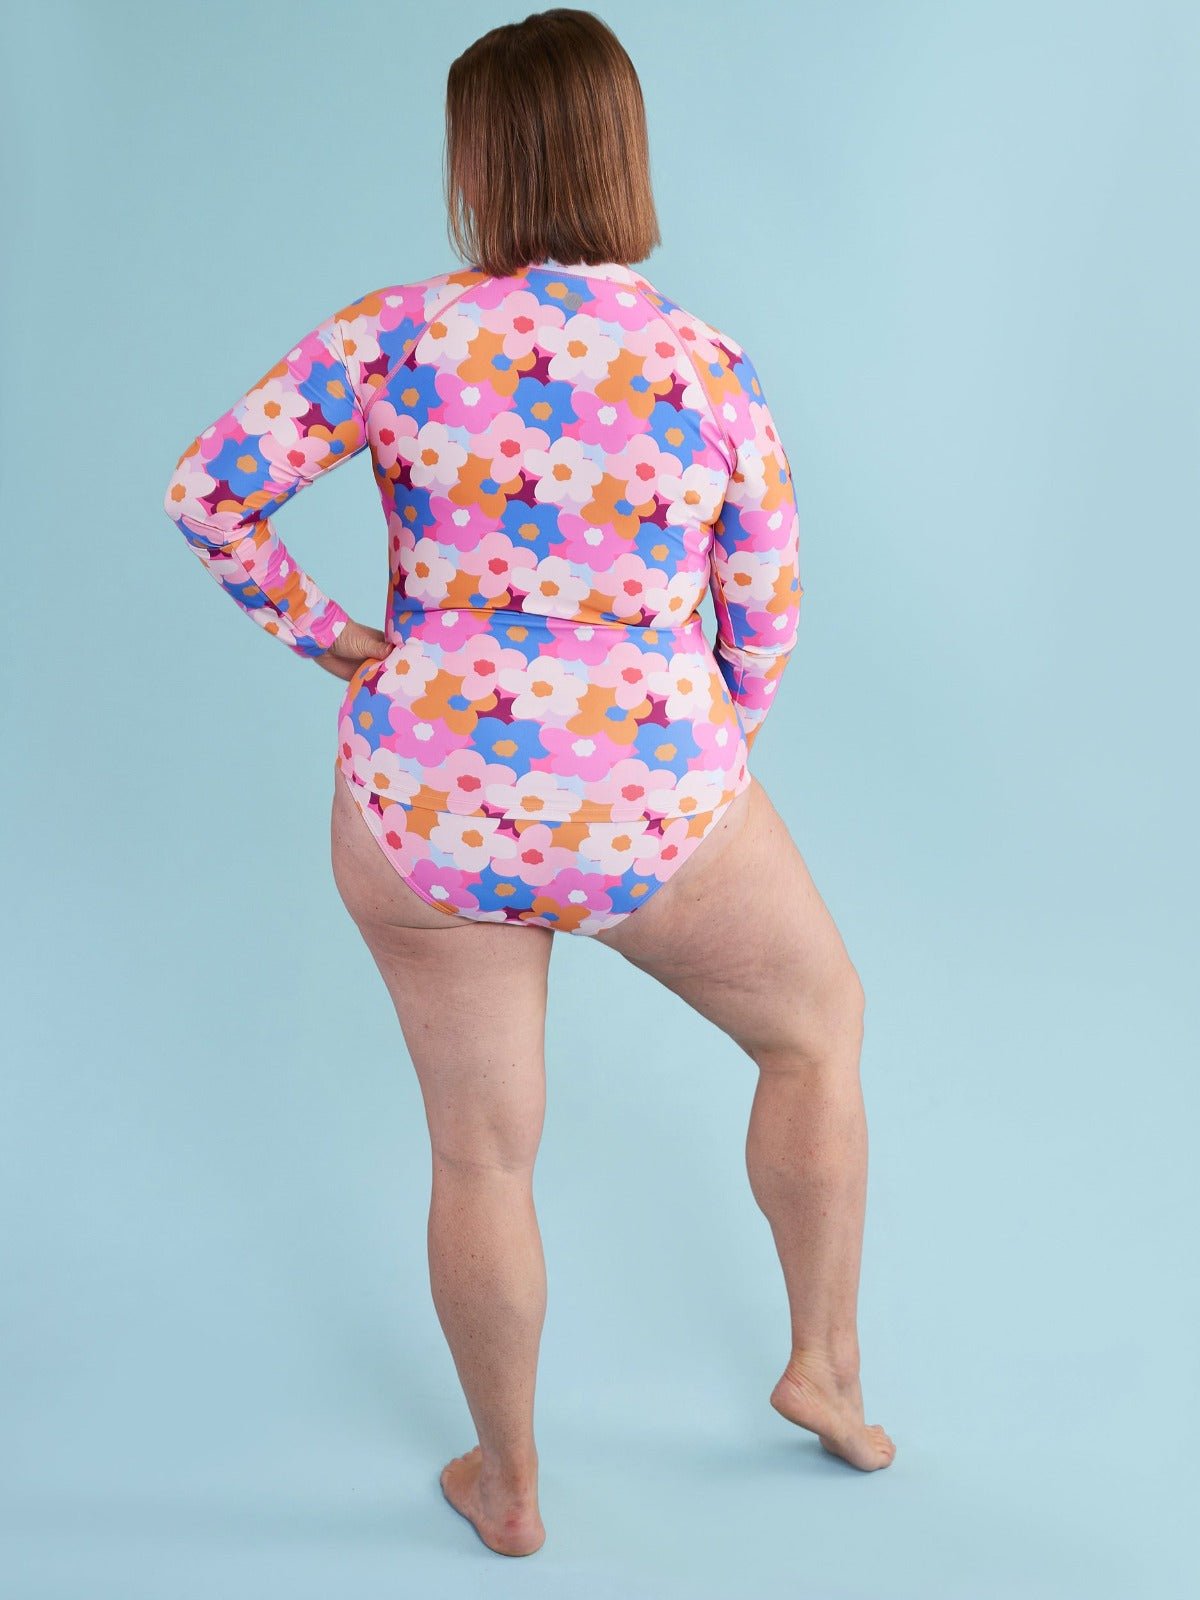 Hello Bloomer Long-Sleeved Full Length Rashie Top - sun safe swimsuit for women plus size